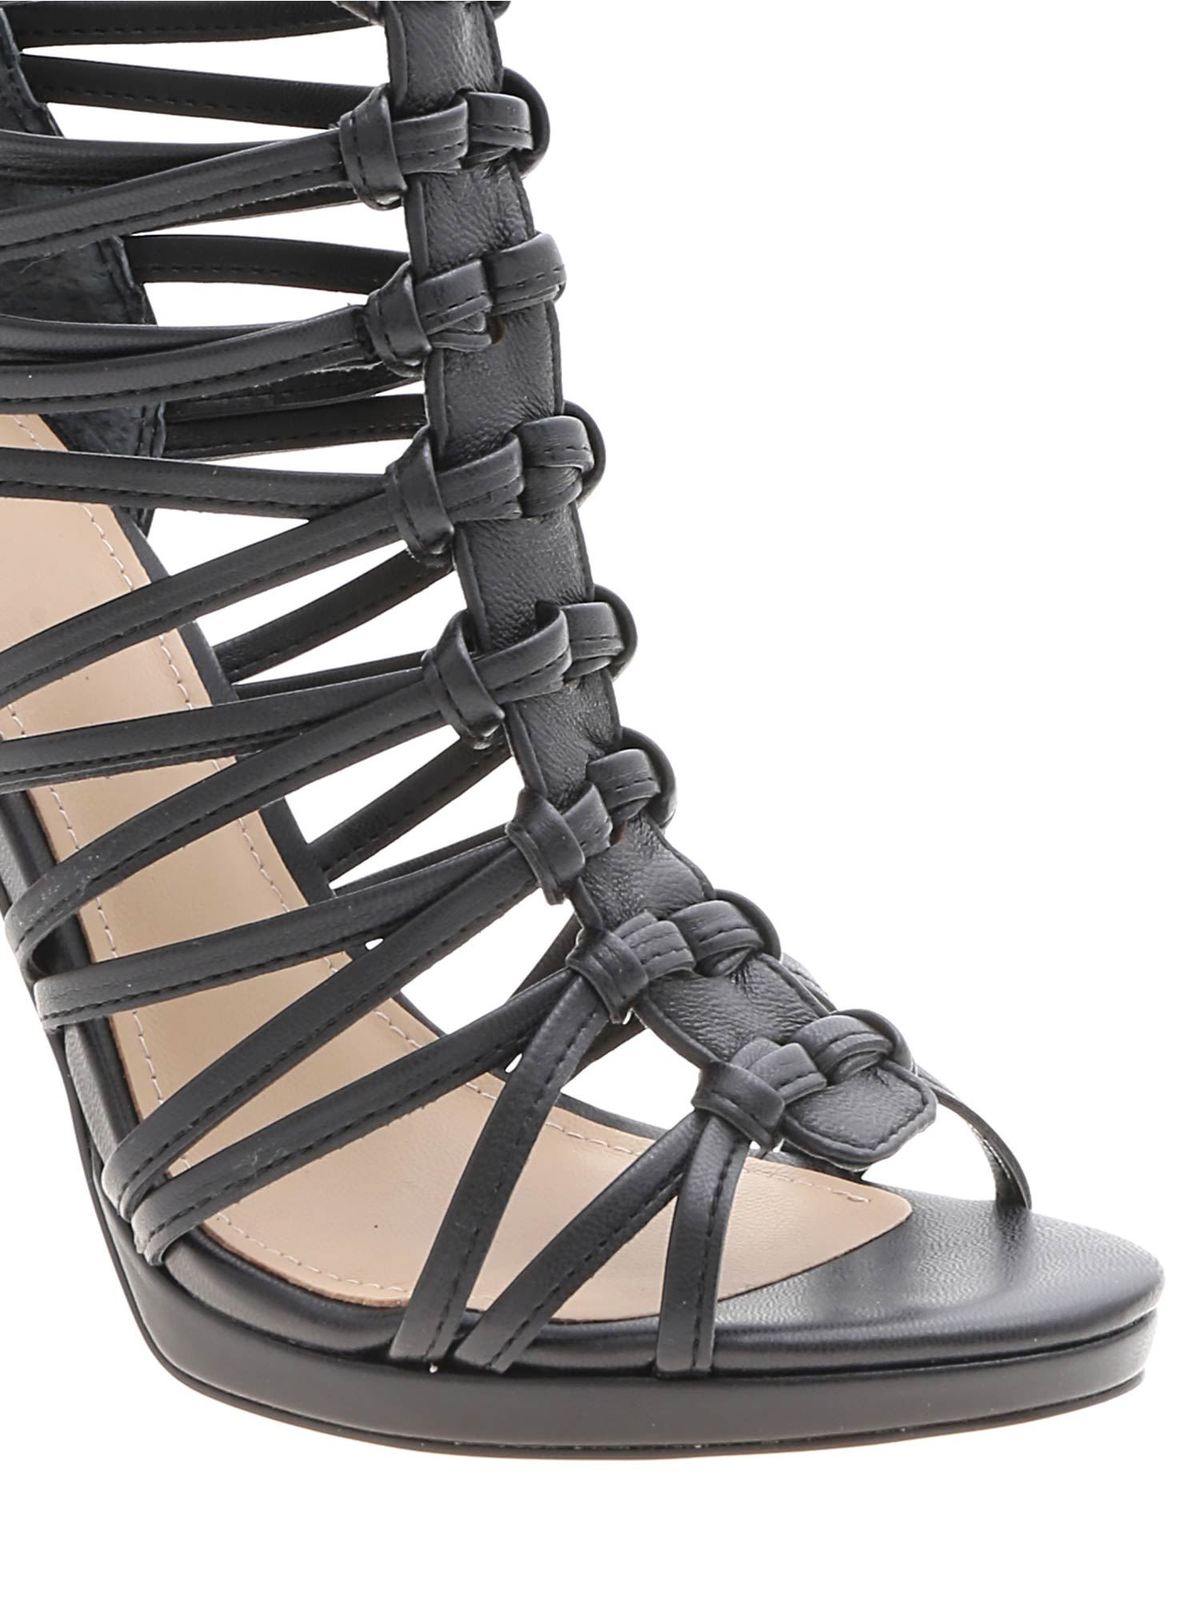 Sandals Guess - Taavi sandals in black leather - FL6TAVLEA03BLACK